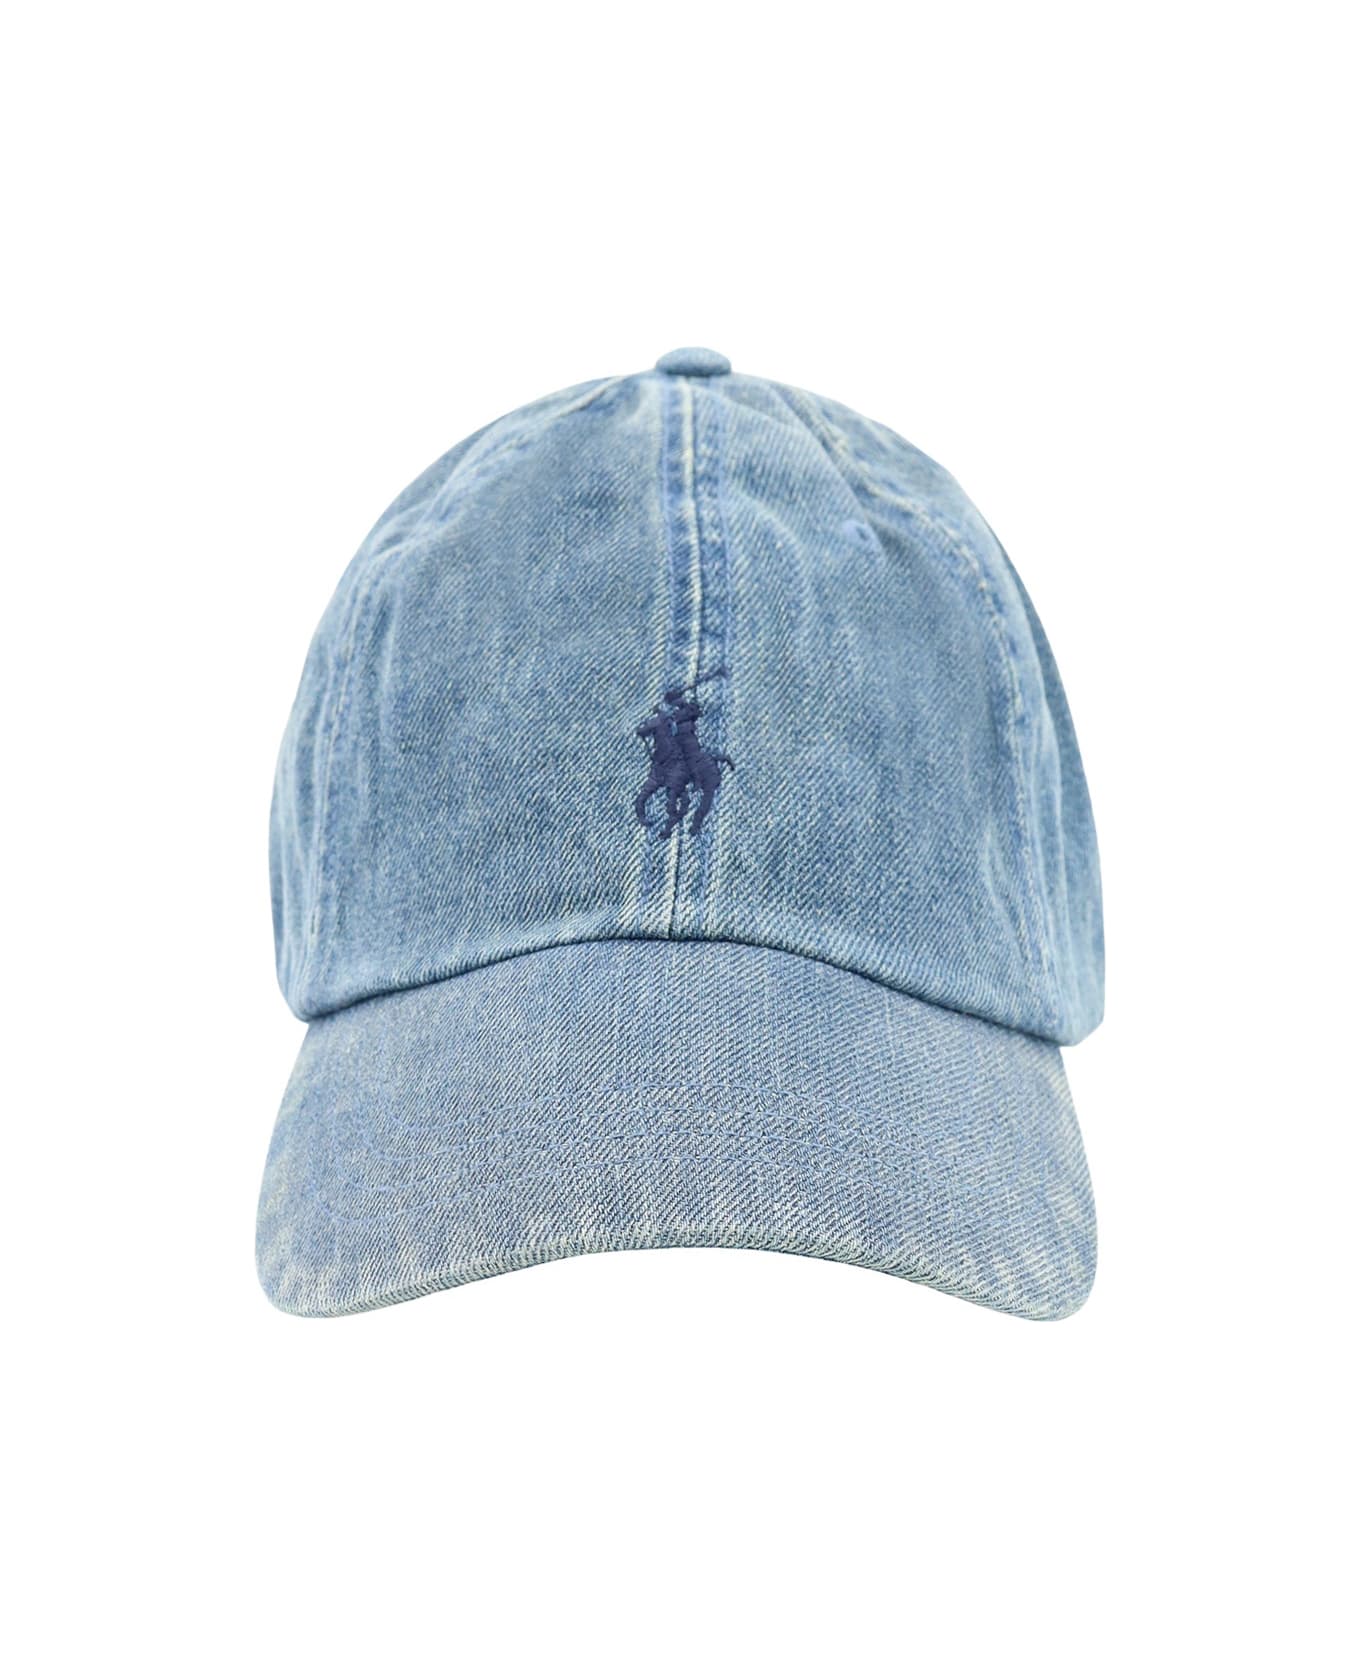 Ralph Lauren Hat - Denim 帽子